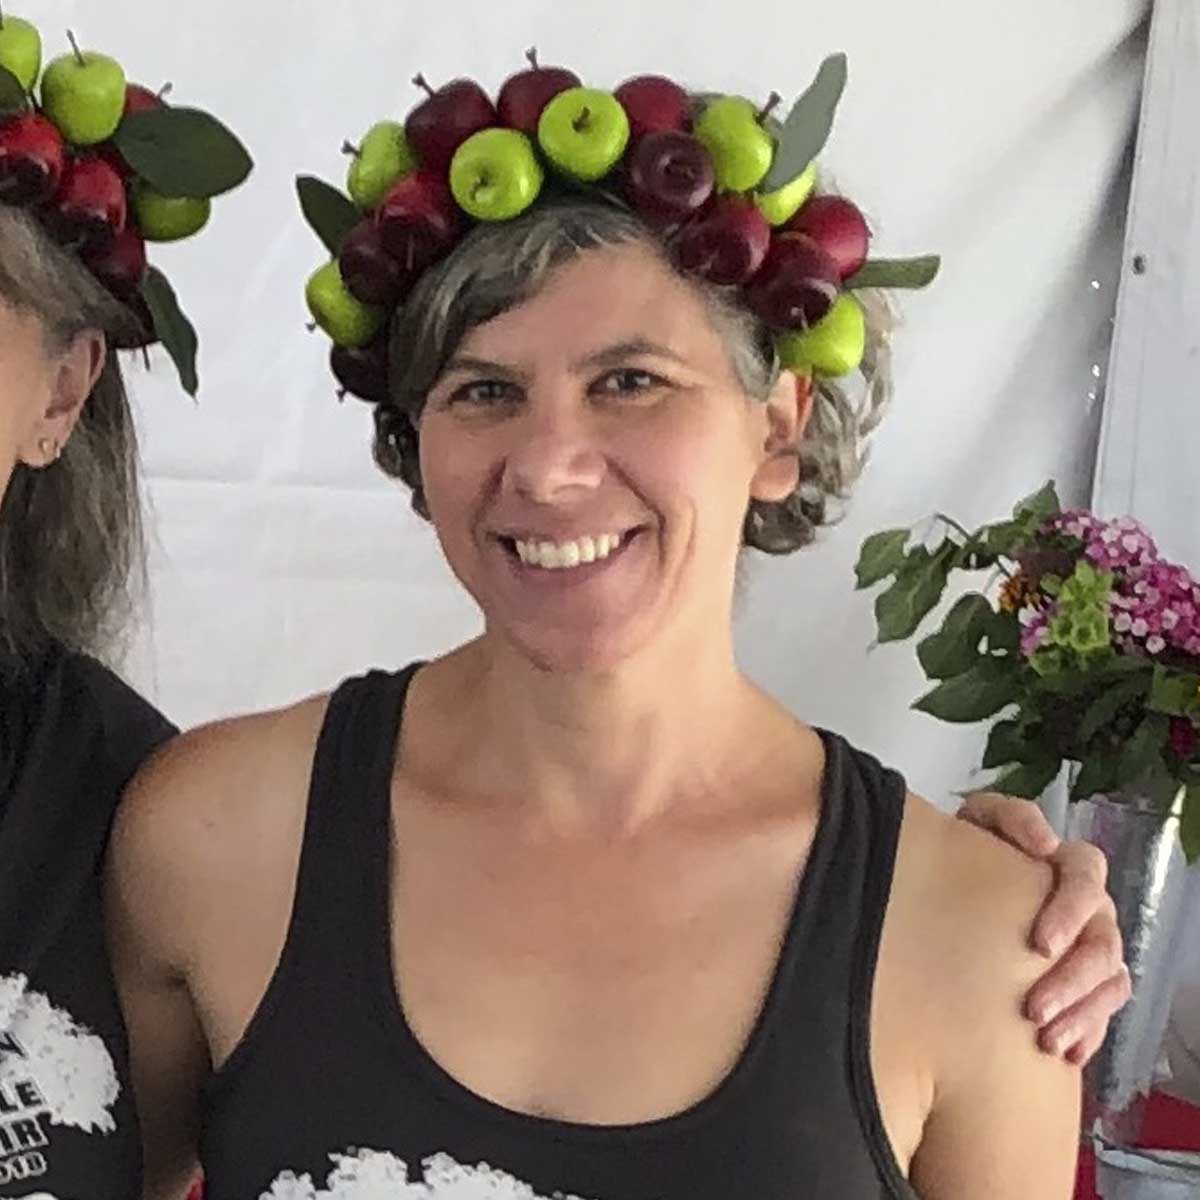 Two women wearing apple hats.